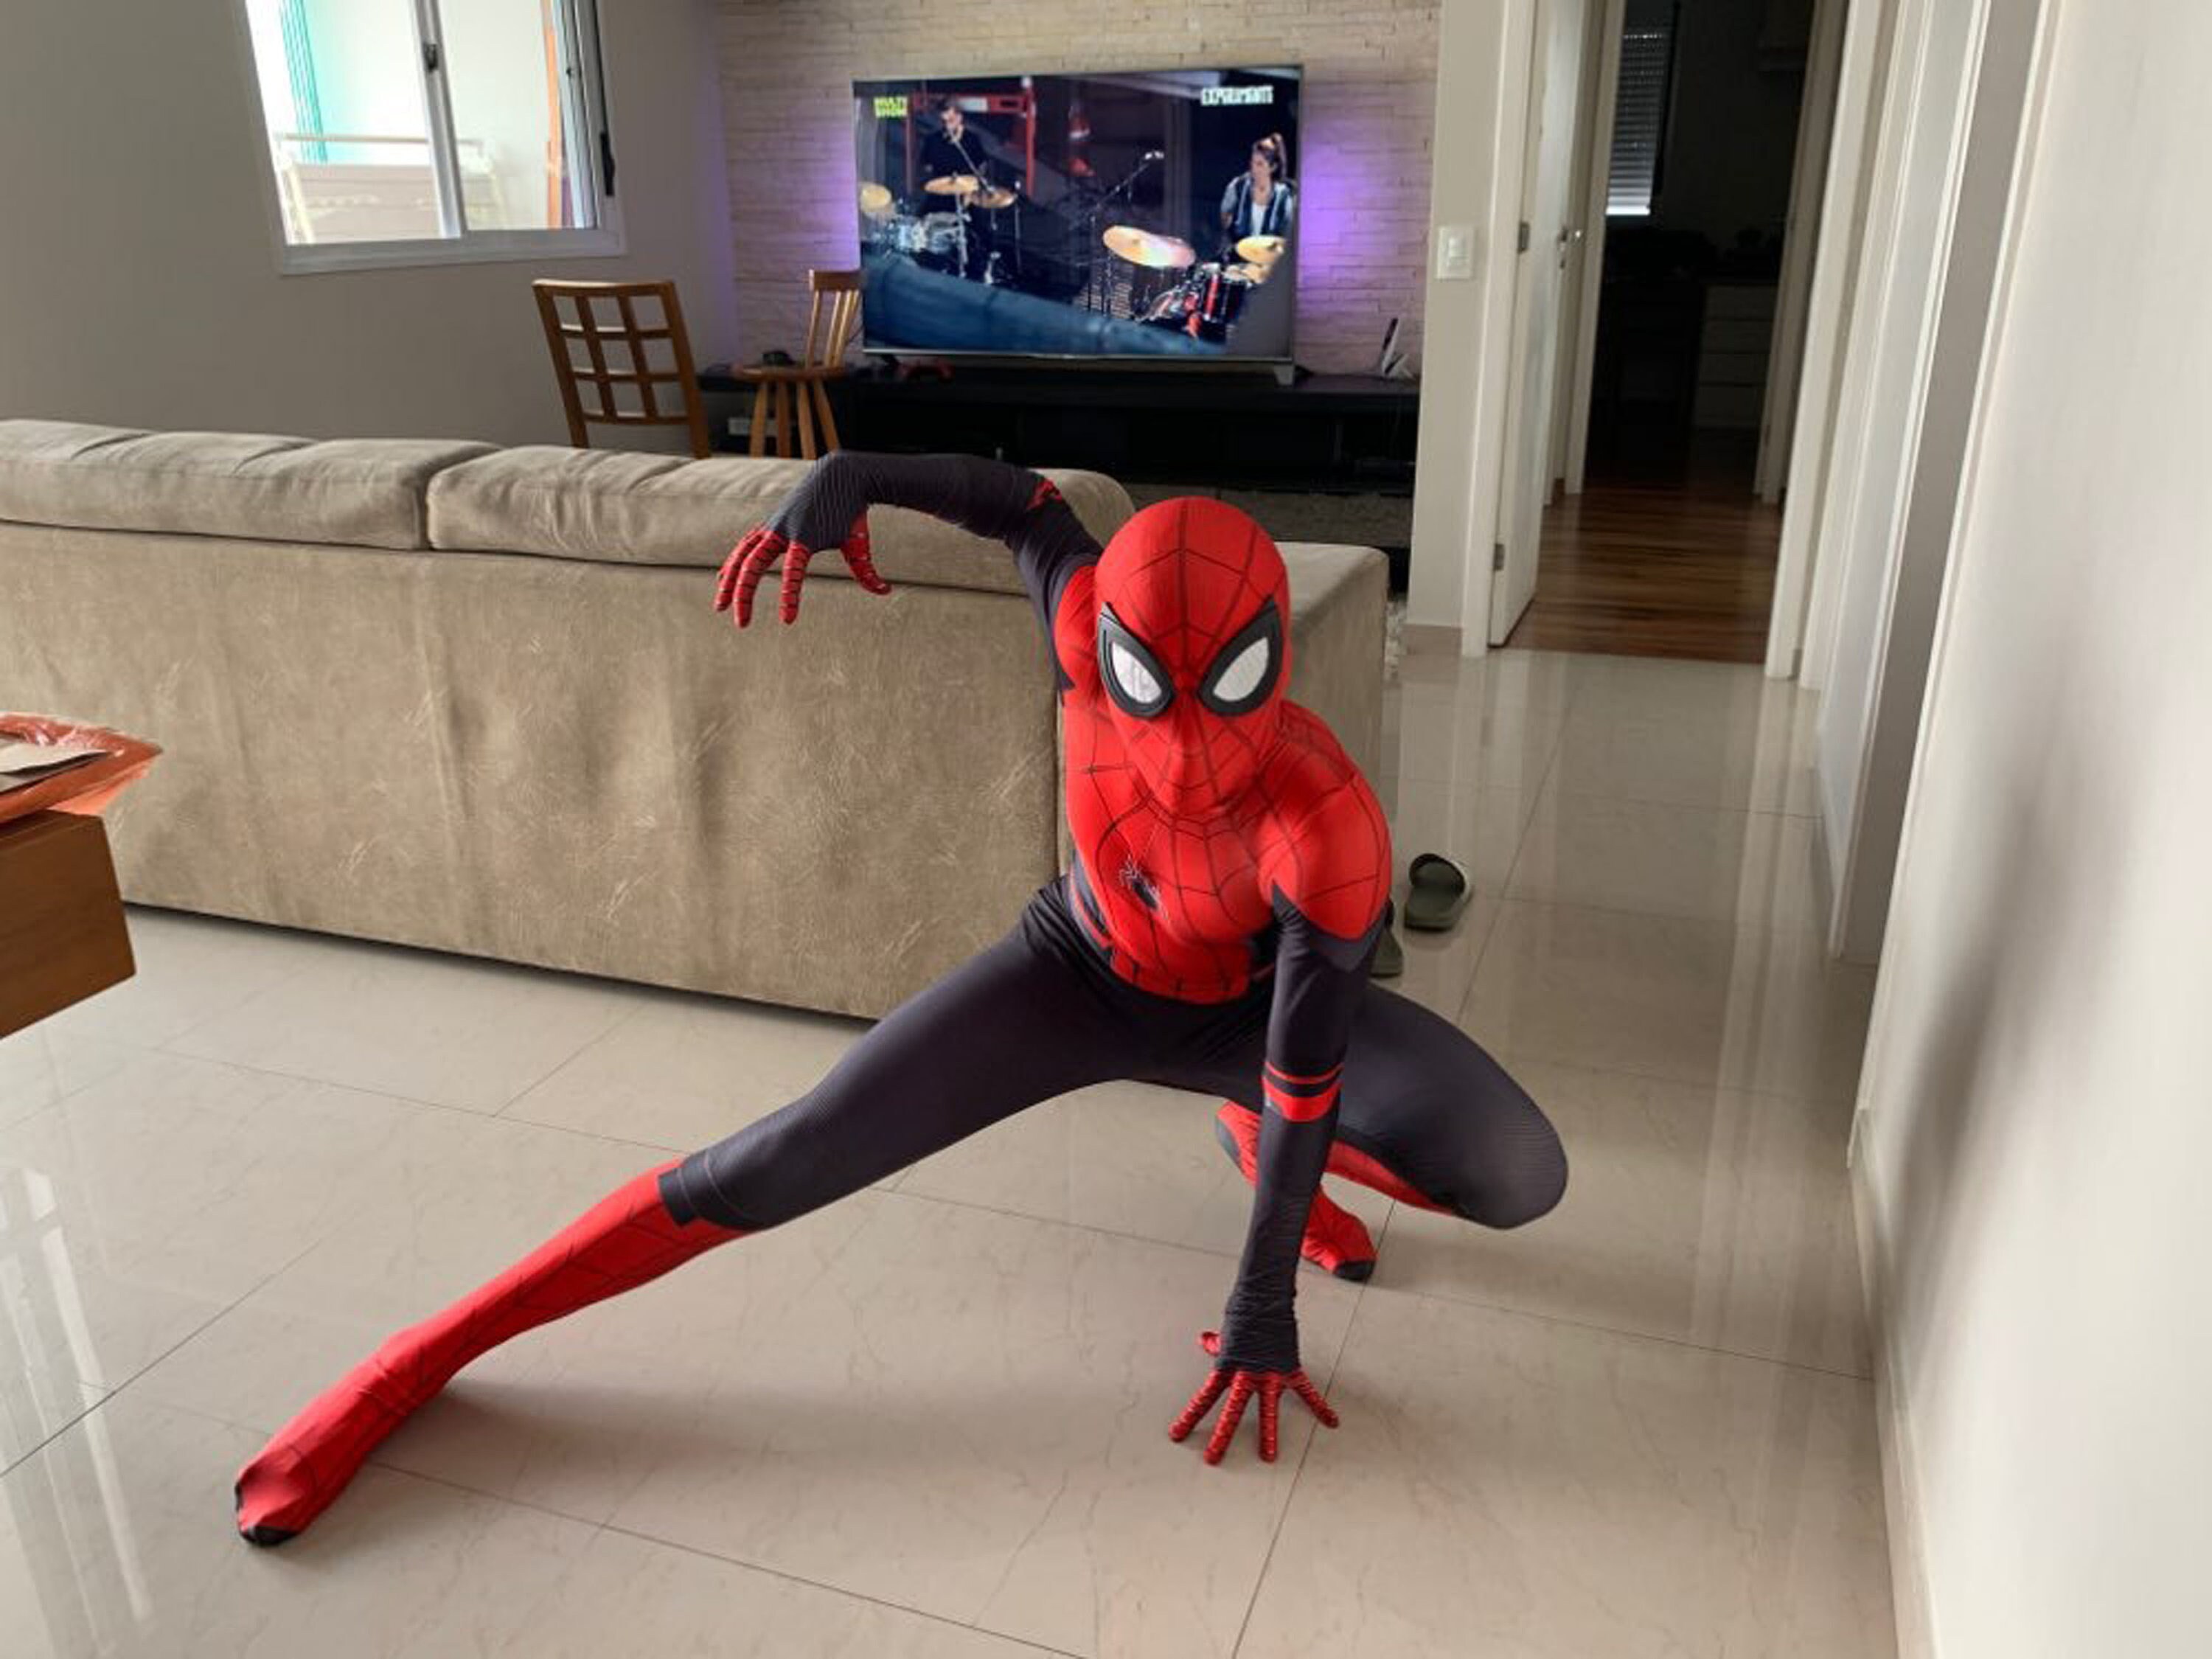 Spider-man: À travers le Spider-verse Cosplay Costume Pour Enfants,  Spiderman Miles Morales Jumpsuit Halloween Party Fancy Dress